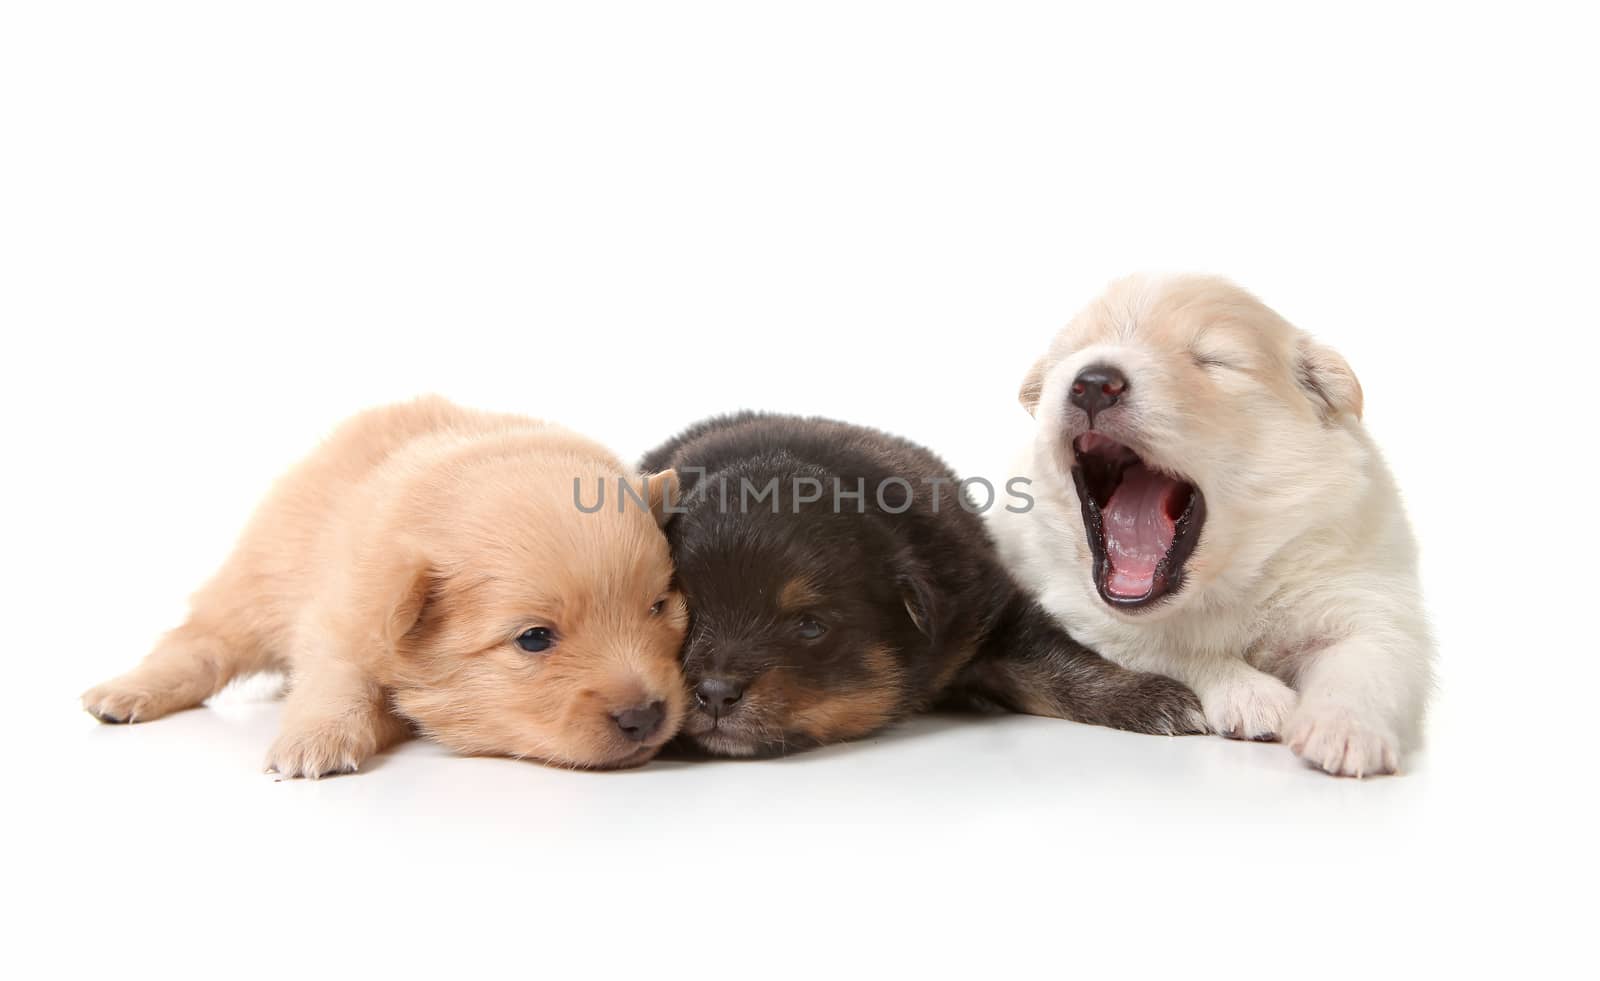 Yawning Cuddly Newborn Puppies by tobkatrina